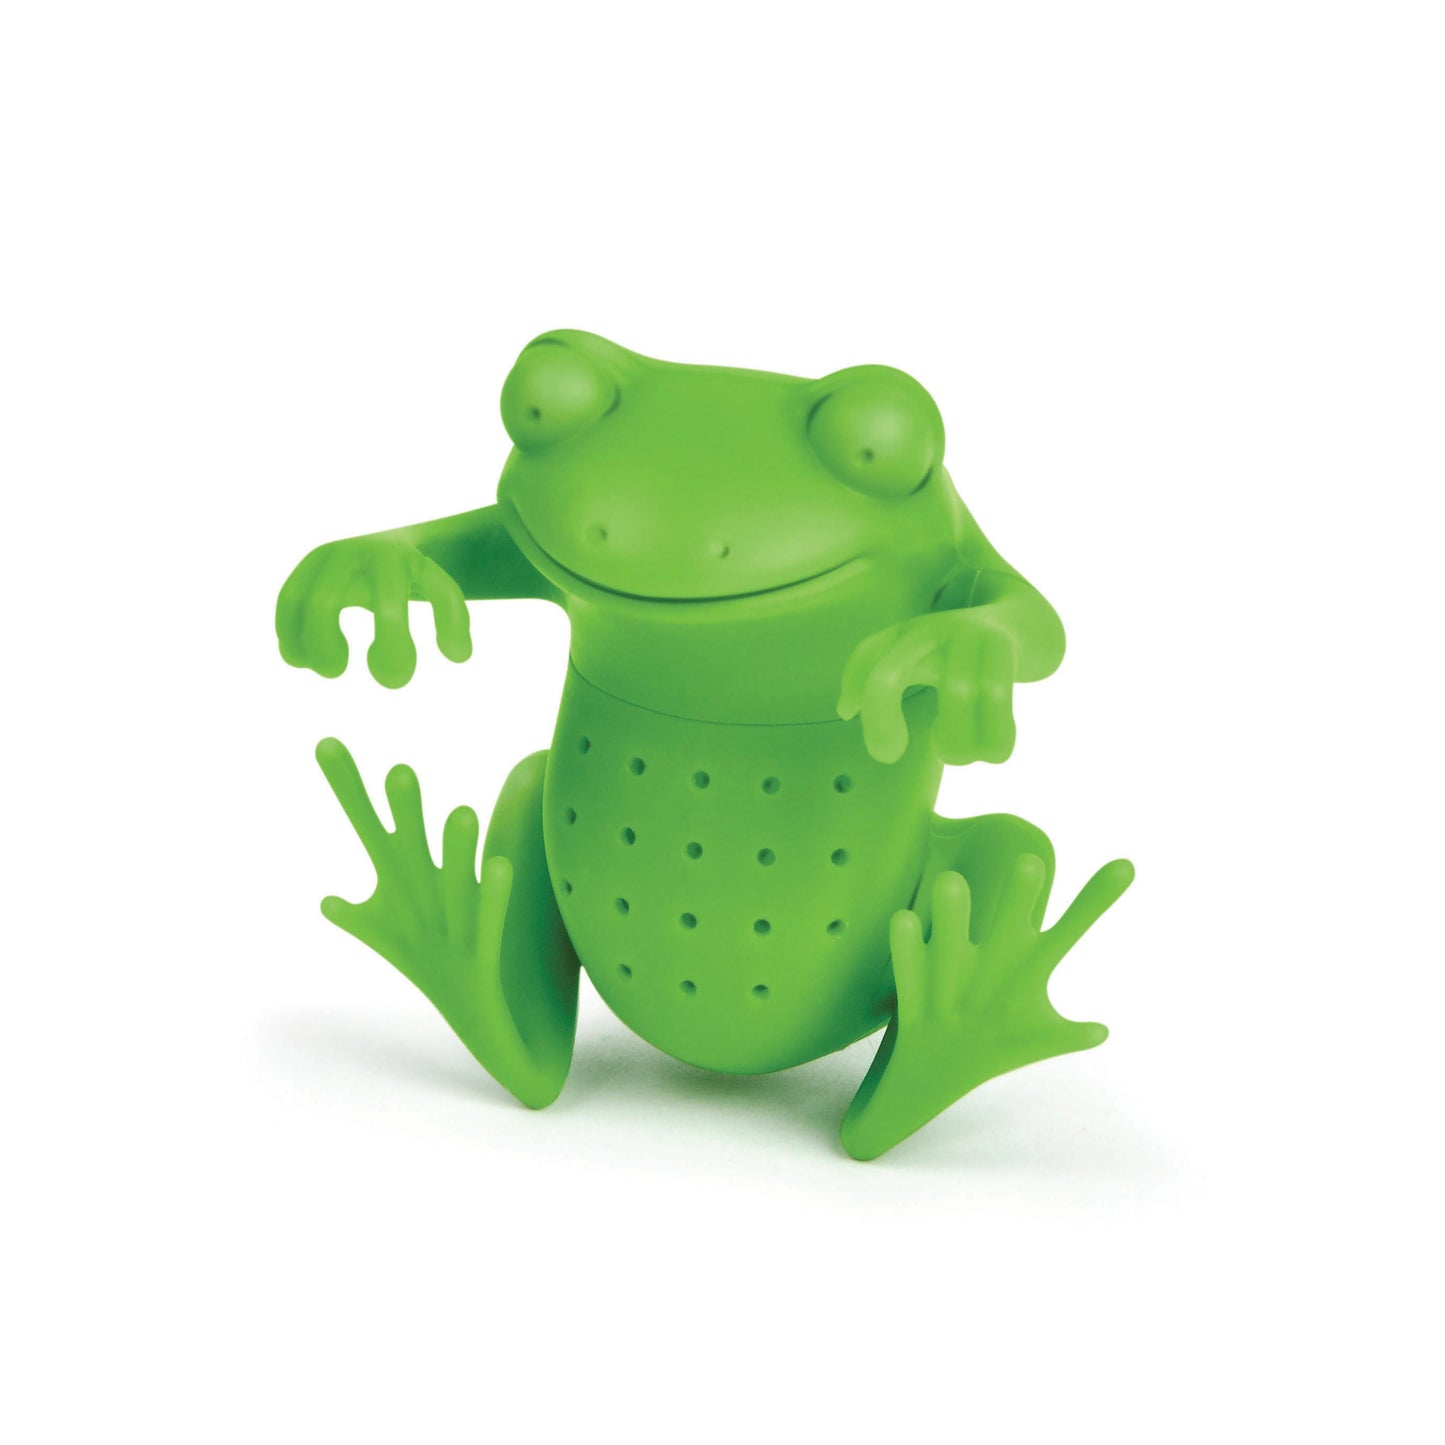 
                  
                    Tea Frog Tea Infuser
                  
                